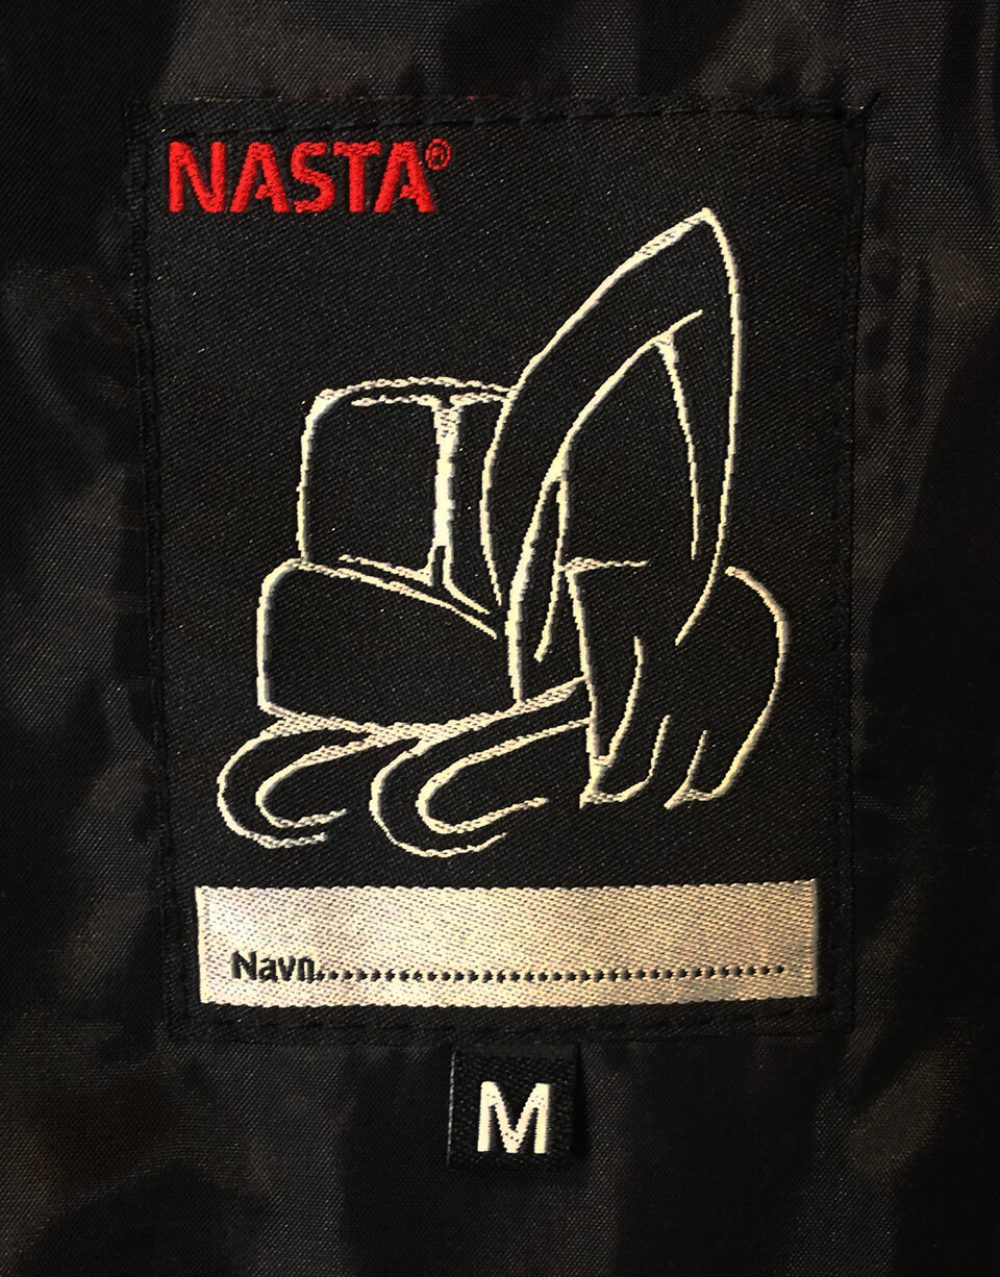 Nasta jakke - Baklabel med plass for navn